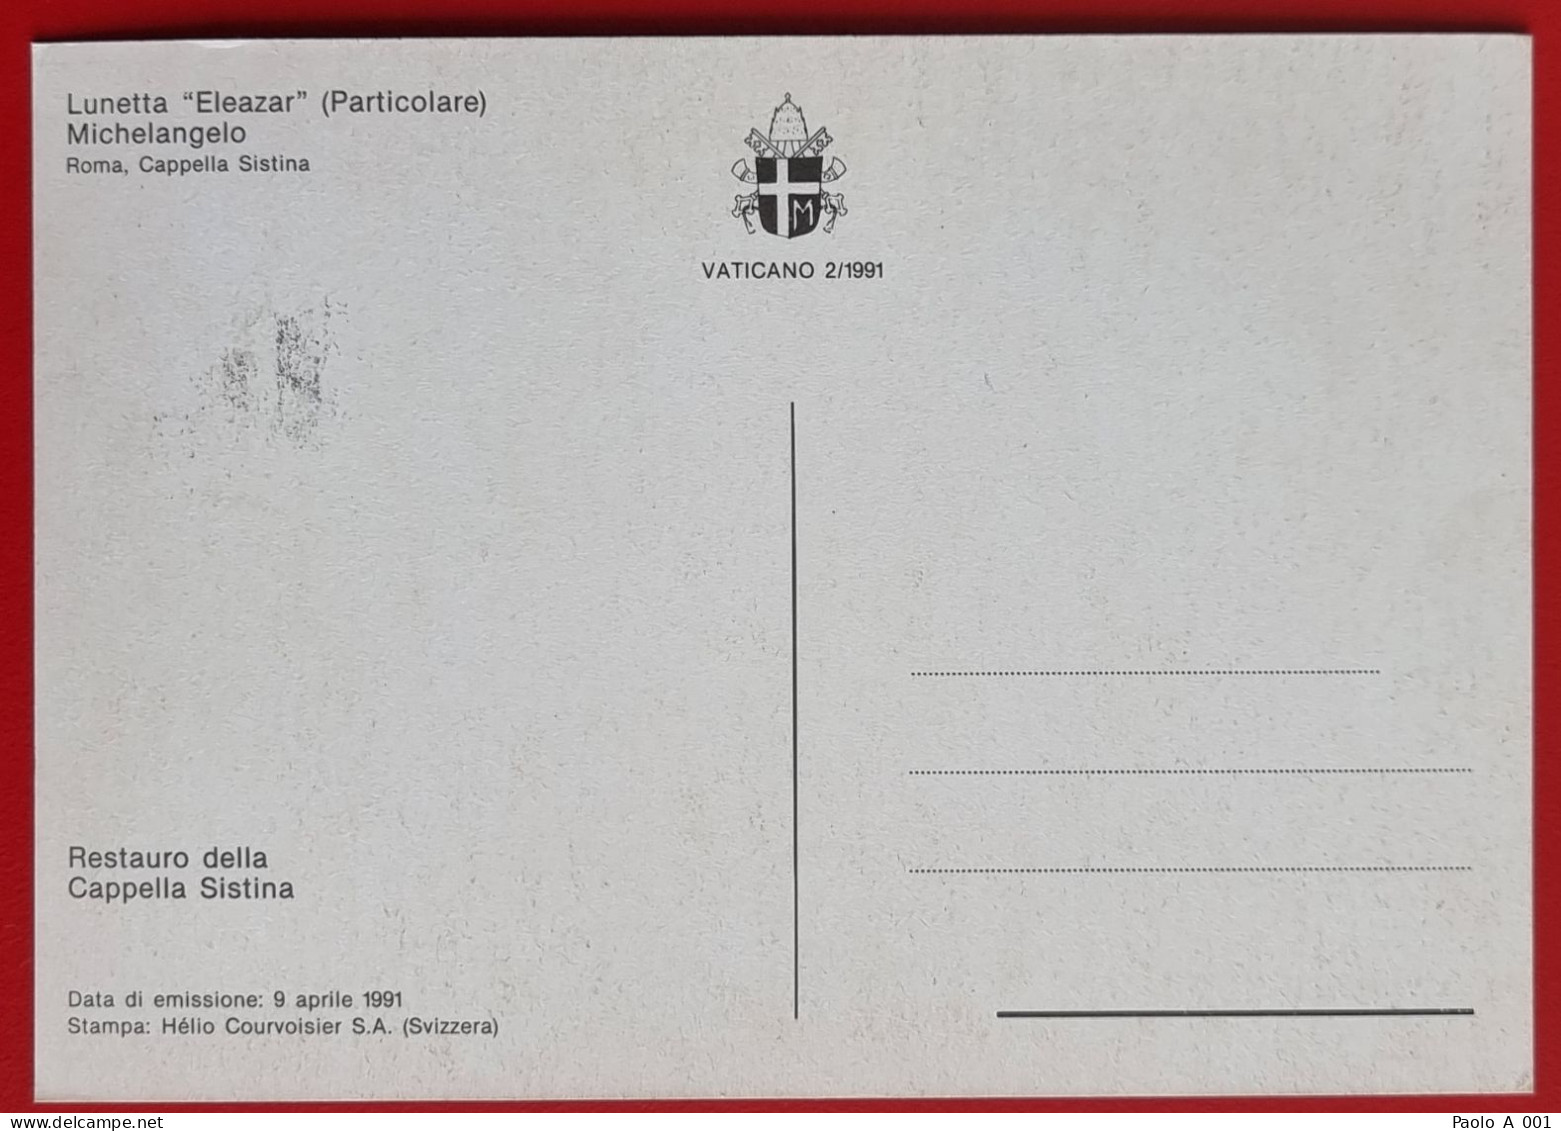 VATICANO VATIKAN VATICAN 1991 LUNETTA ELEAZAR CAPPELLA SISTINA SISTINE CHAPEL MAXIMUM CARD - Covers & Documents